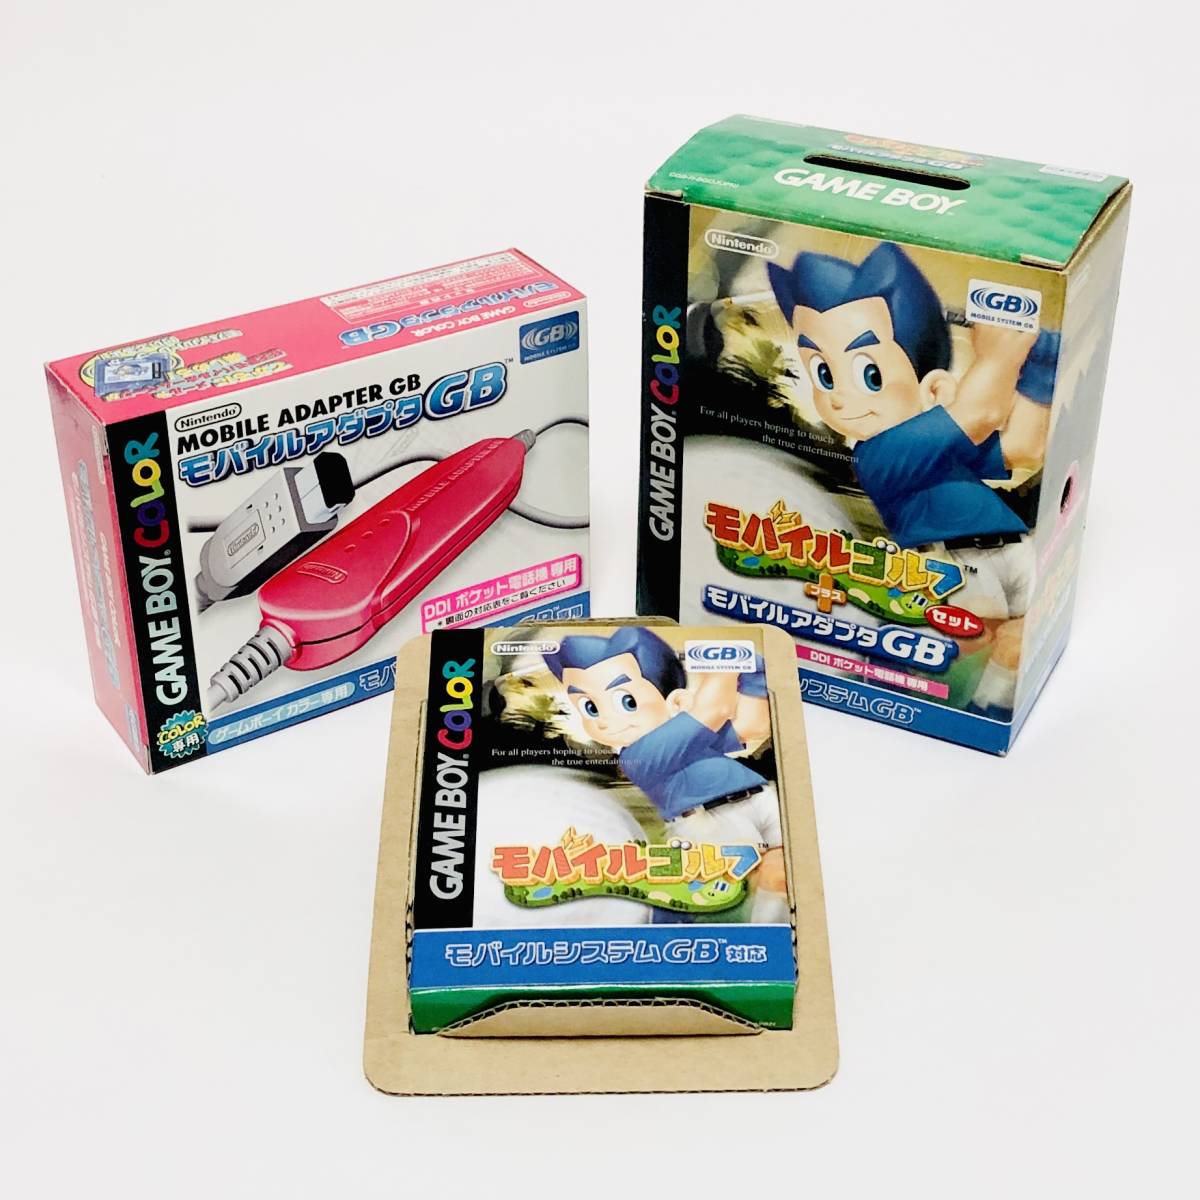 ゲームボーイ カラー モバイルゴルフ + モバイルアダプタGBセット DDIポケット電話機専用 任天堂 Nintendo Gameboy Mobile Golf + Adapter